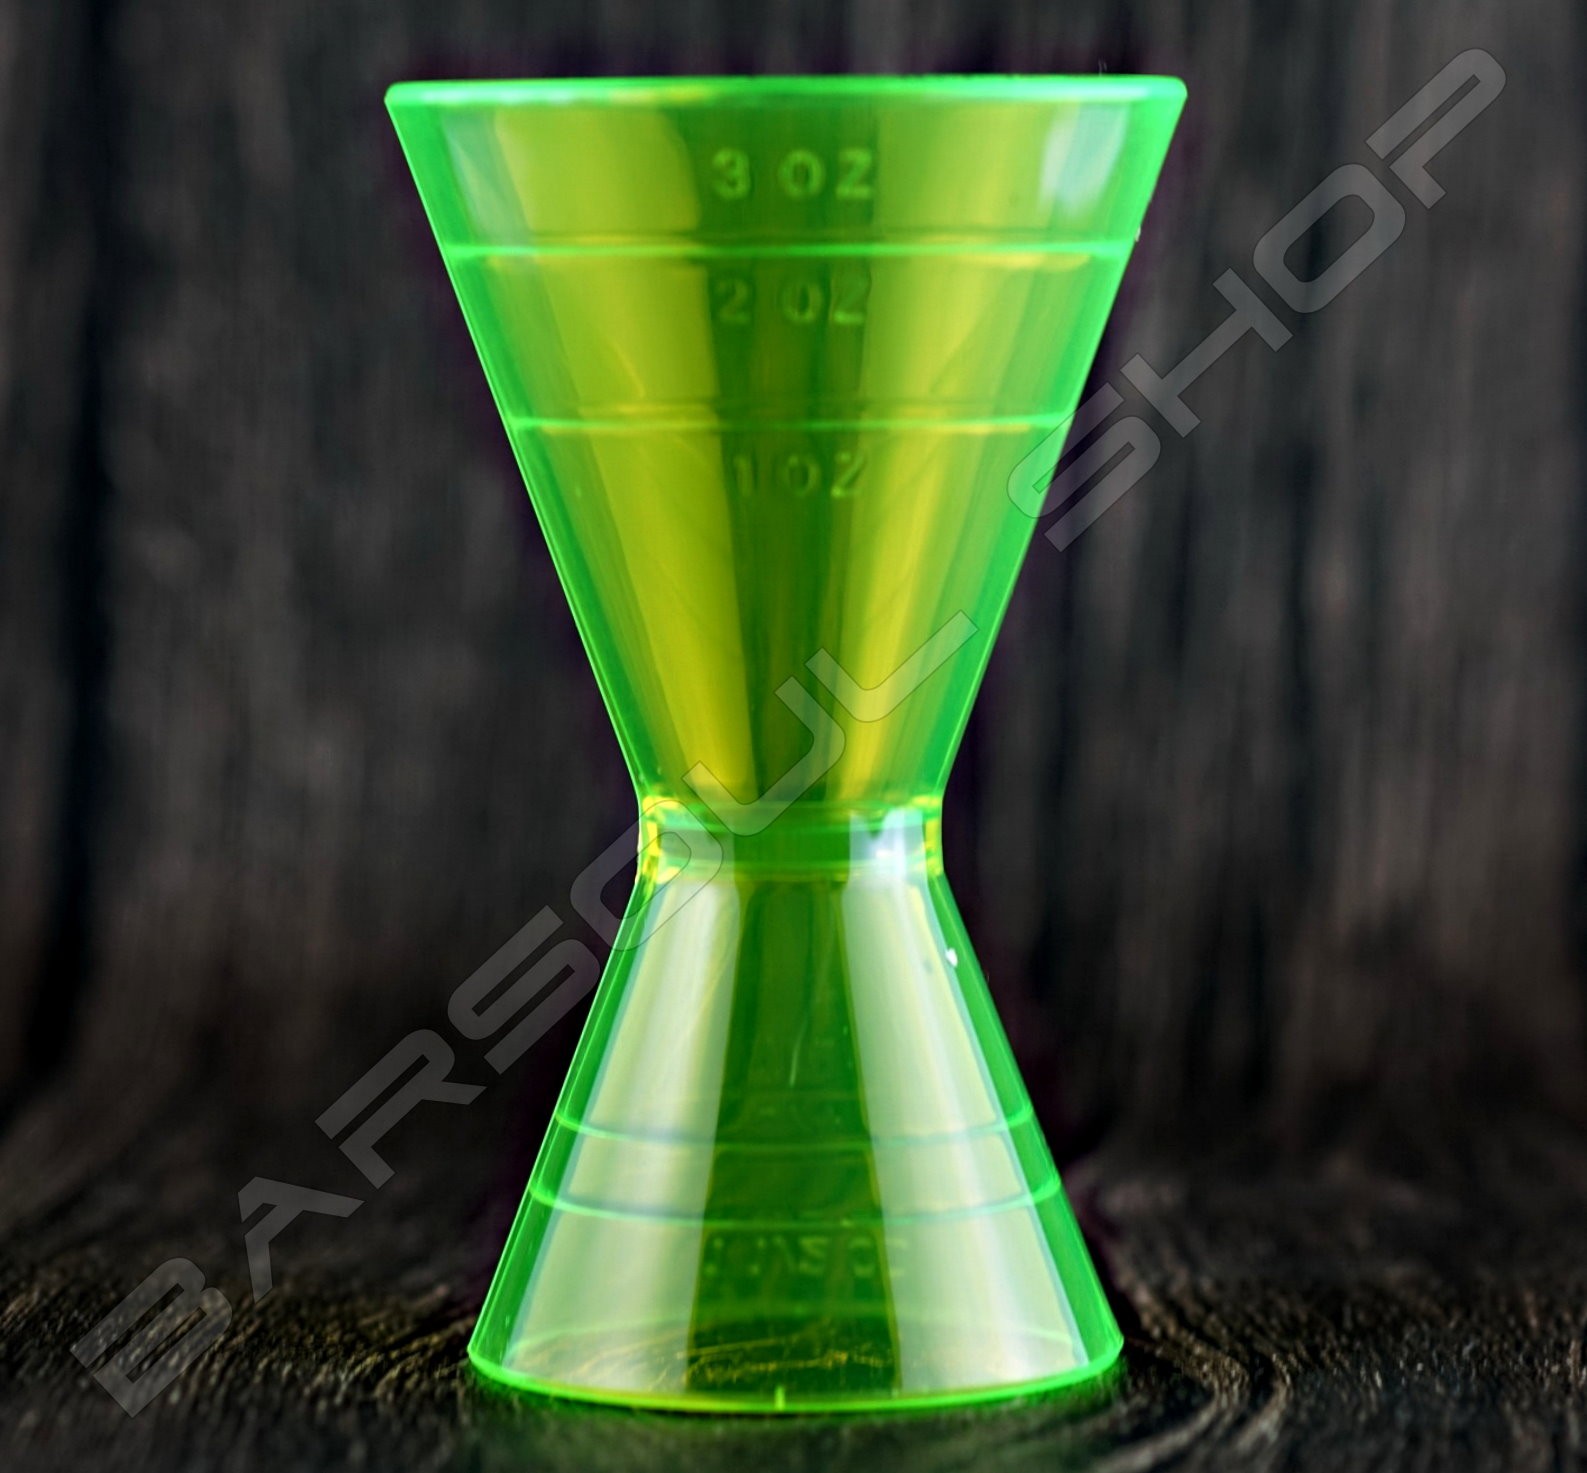 塑料刻度量酒器(綠)60/90ml Plastic Jigger(green)